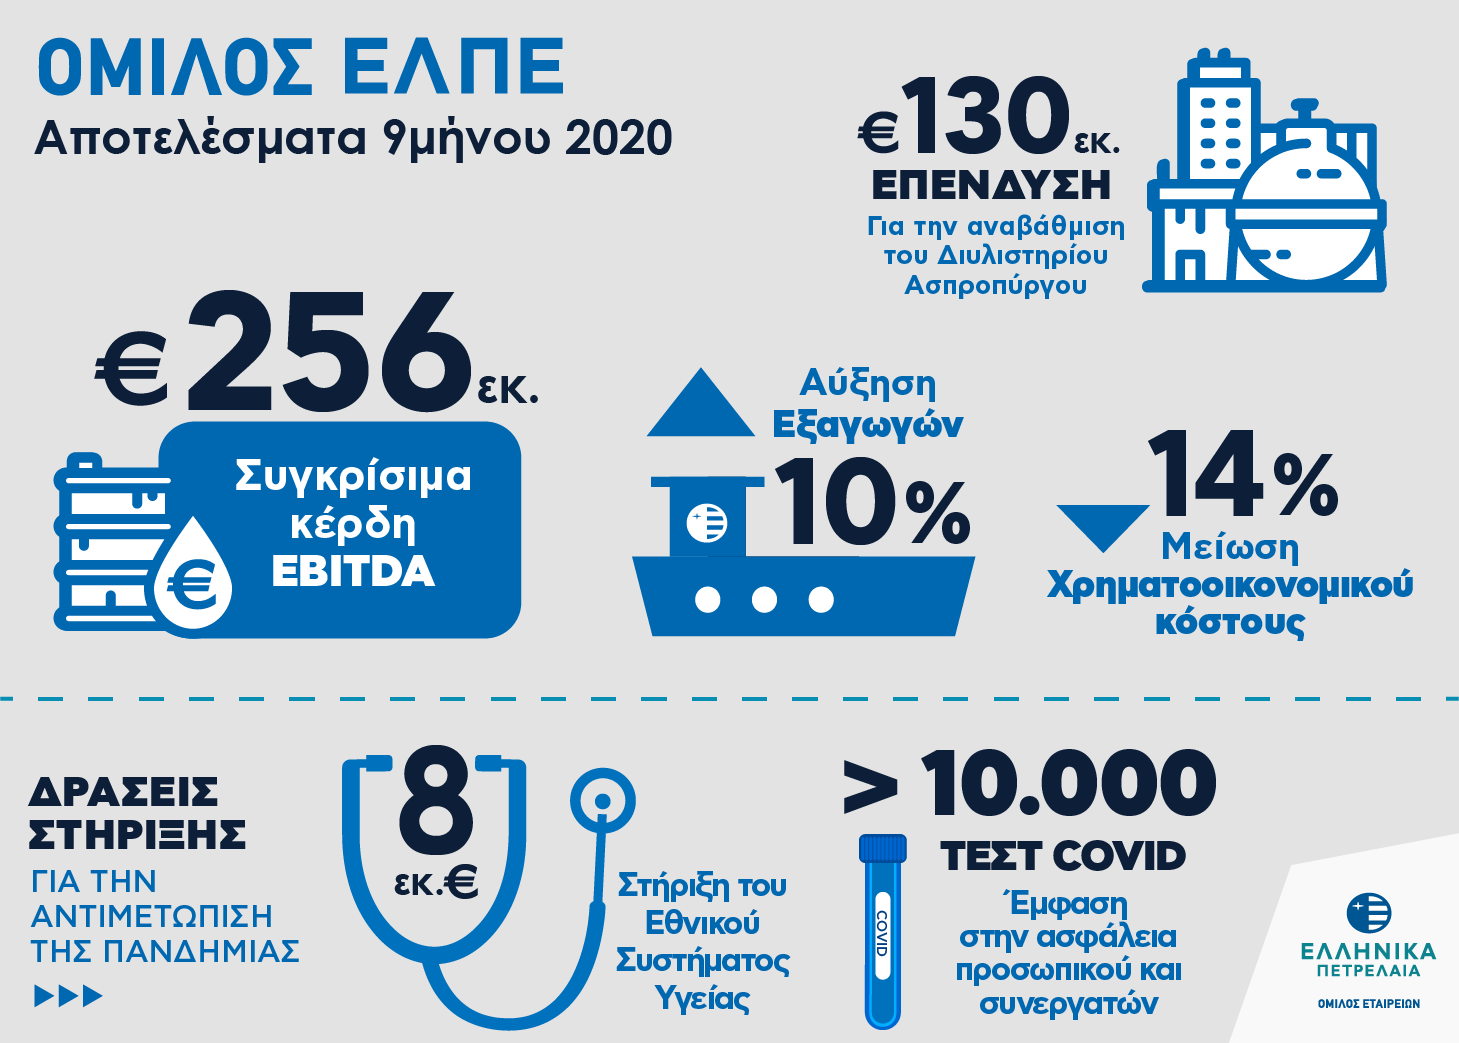 ελπε, ελληνικά πετρέλαια, εννεάμηνο 2020